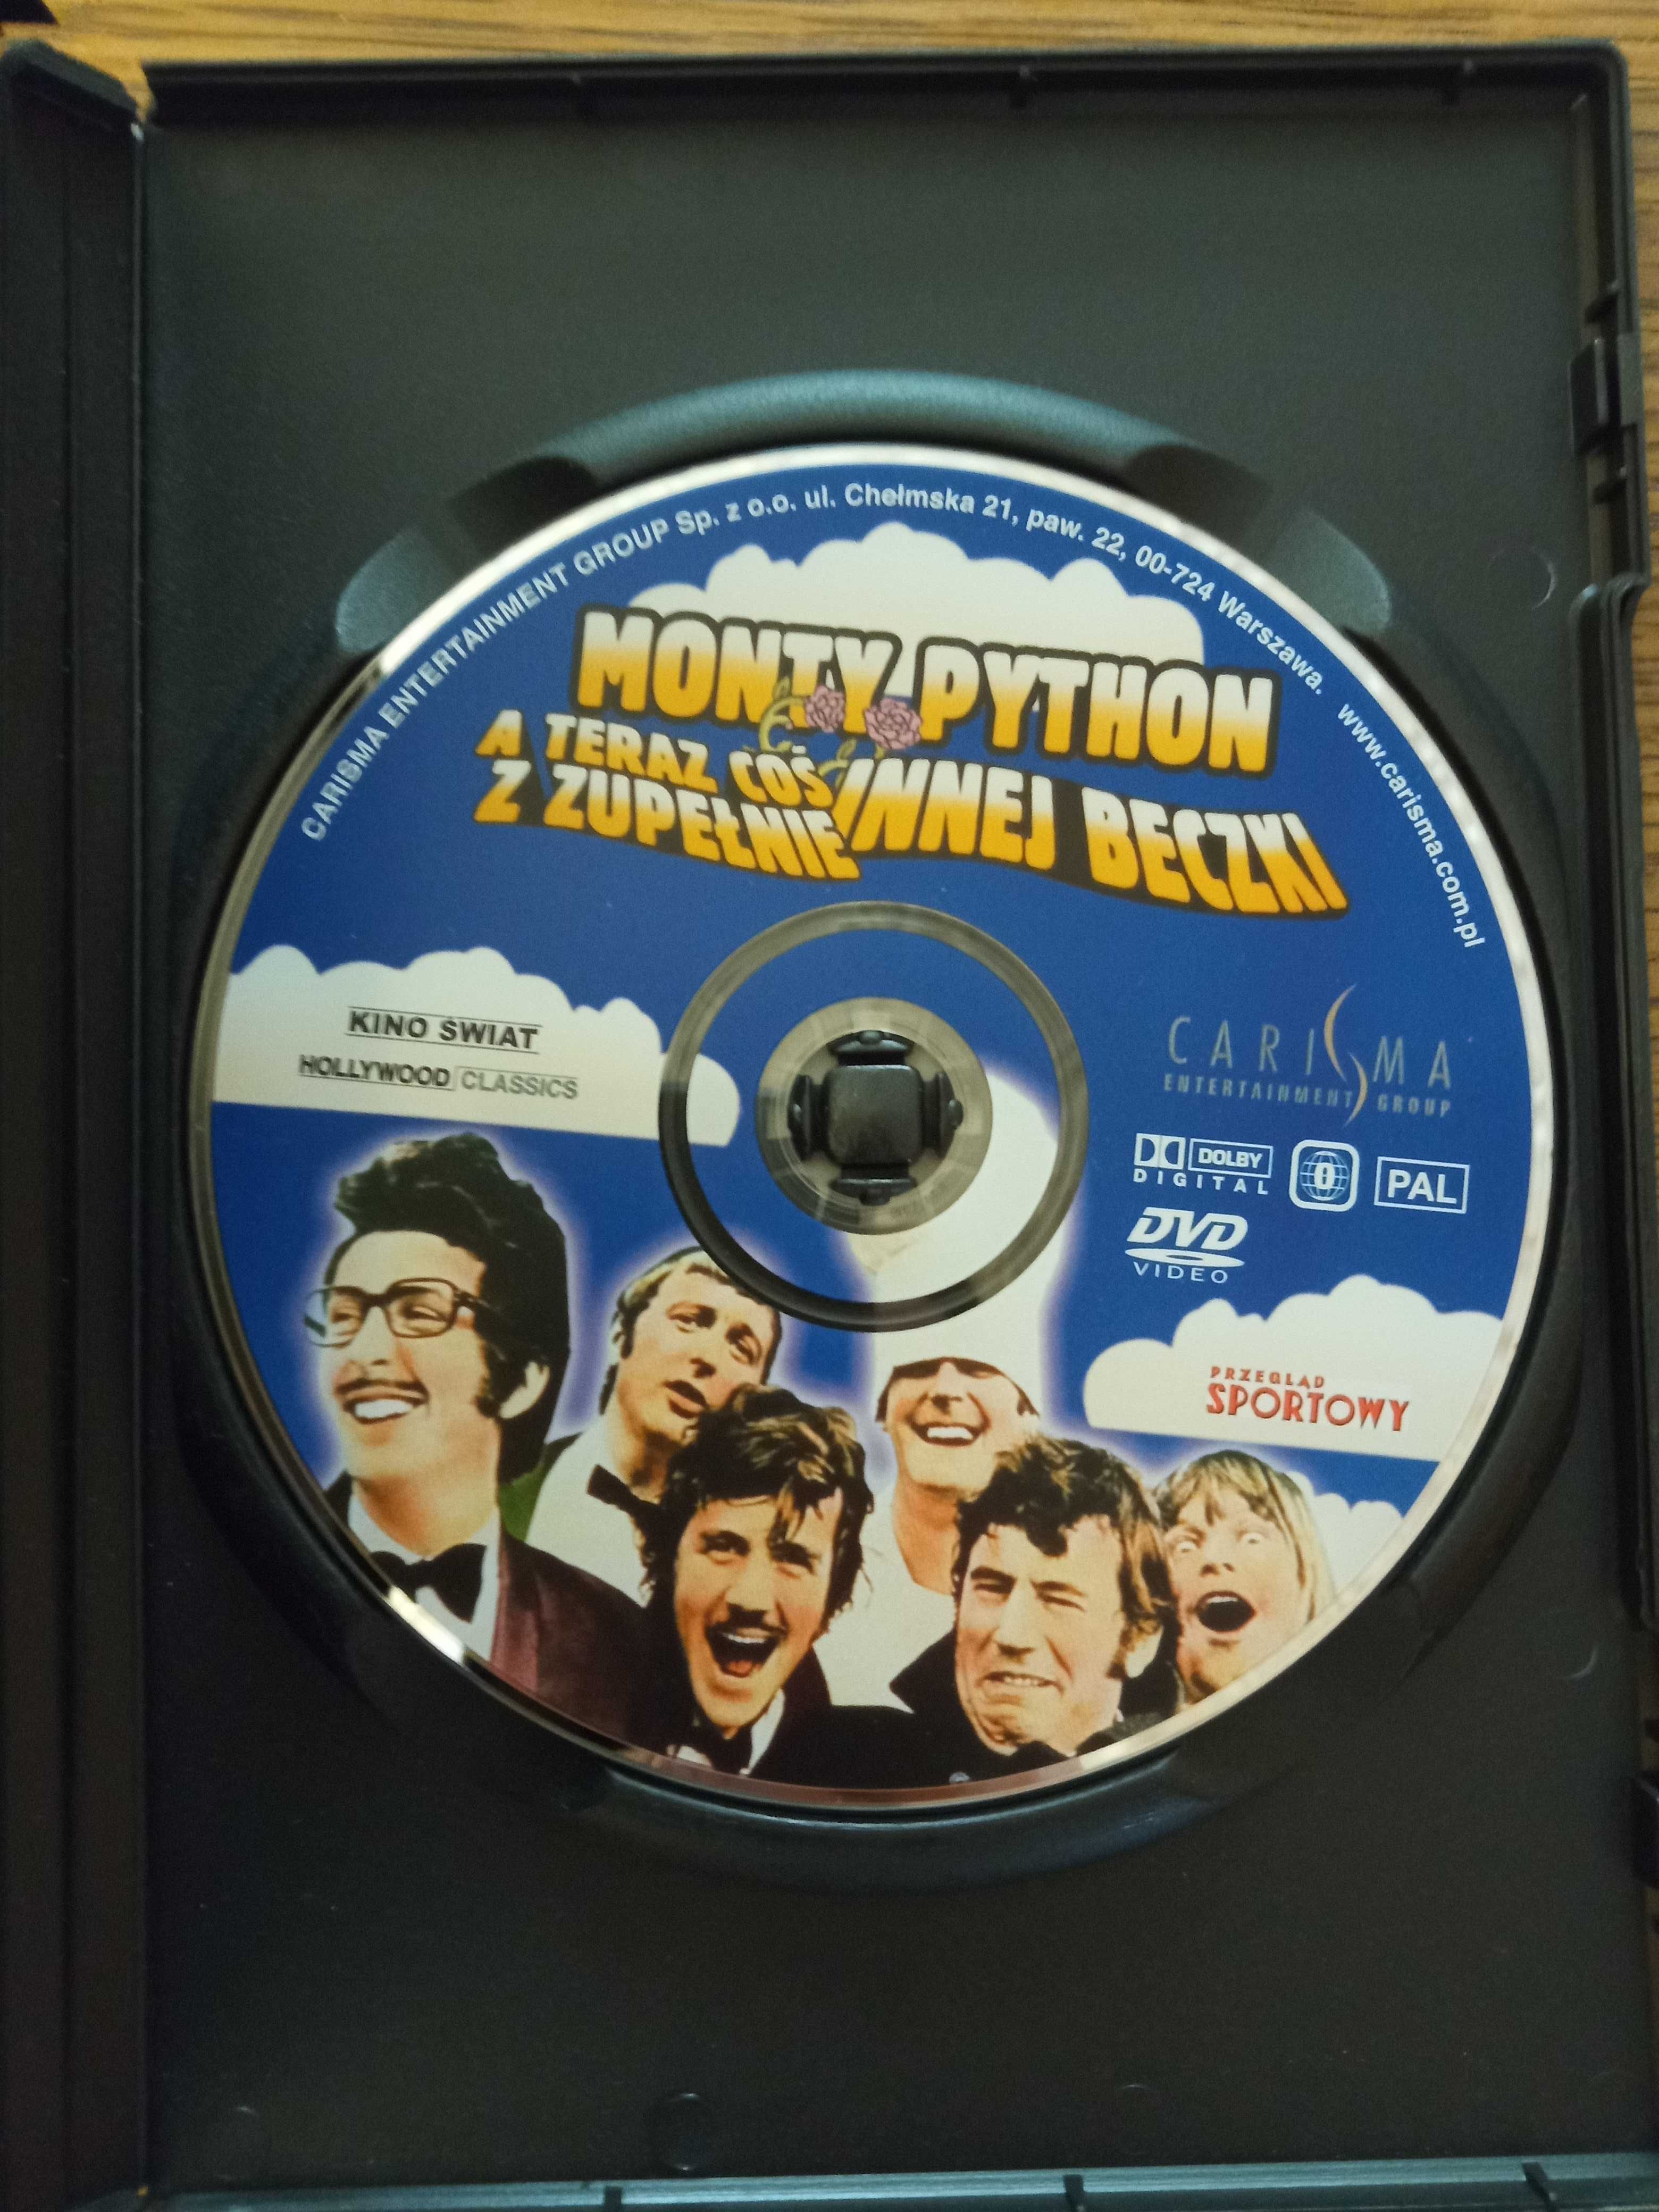 Monty Python A teraz coś z zupełnie innej beczki DVD